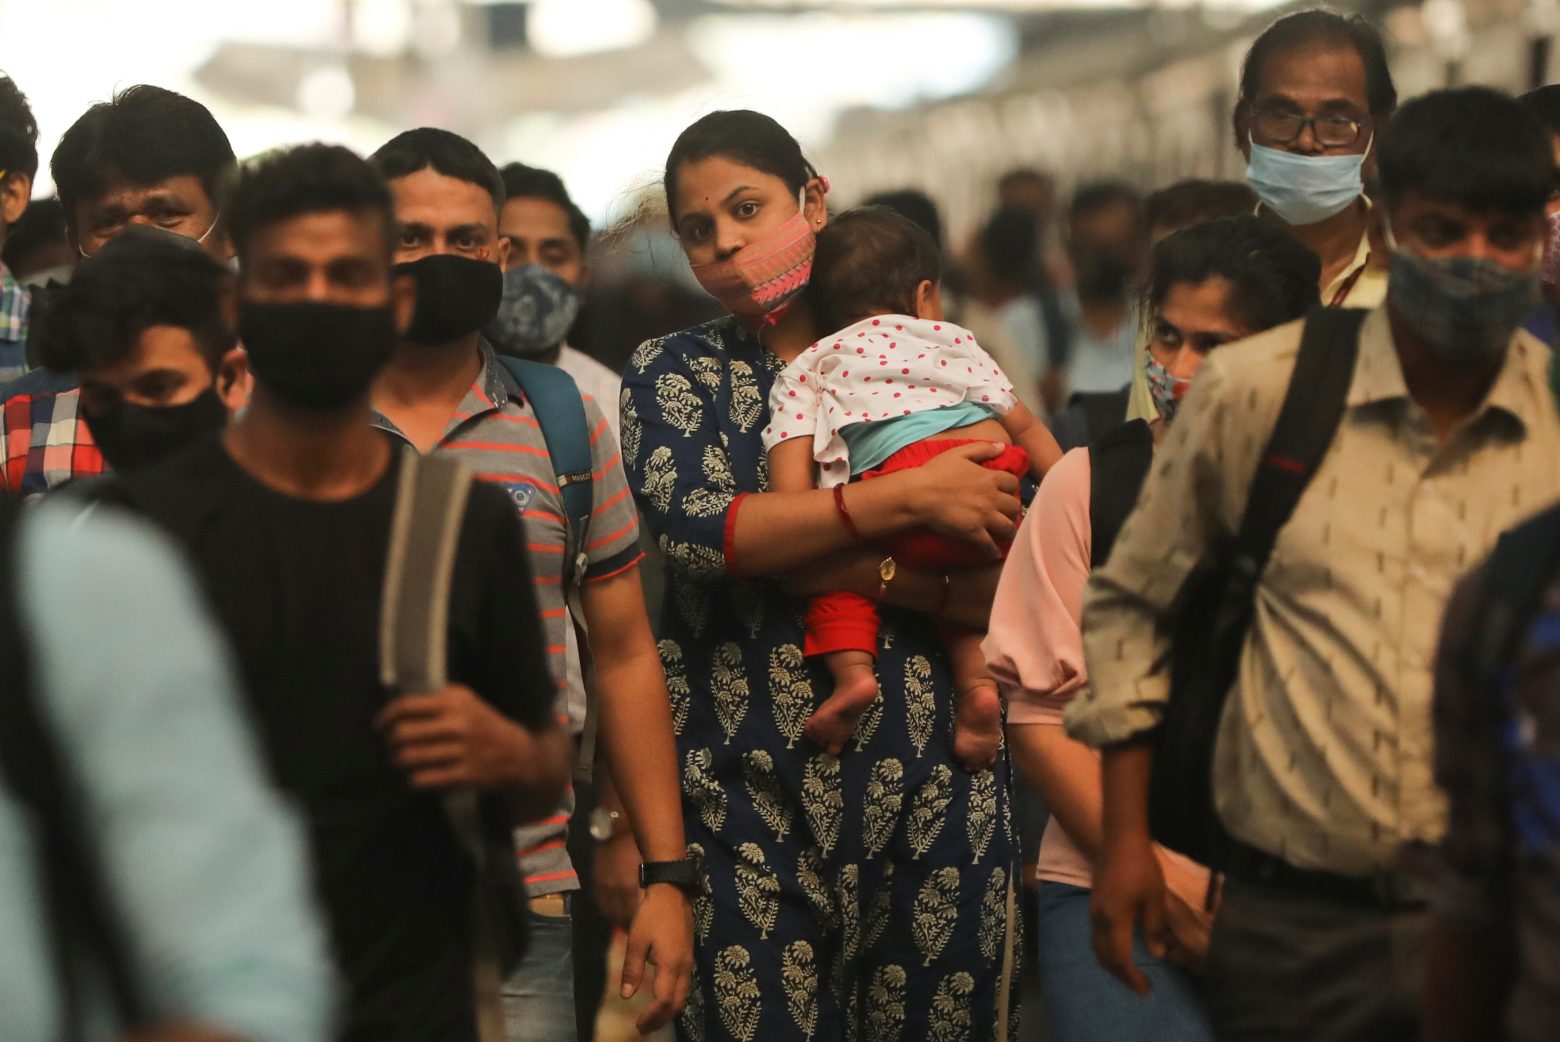 Ινδία – Εκατομμύρια εξαναγκαστικές αμβλώσεις και βρεφοκτονίες με στόχο τον γιο